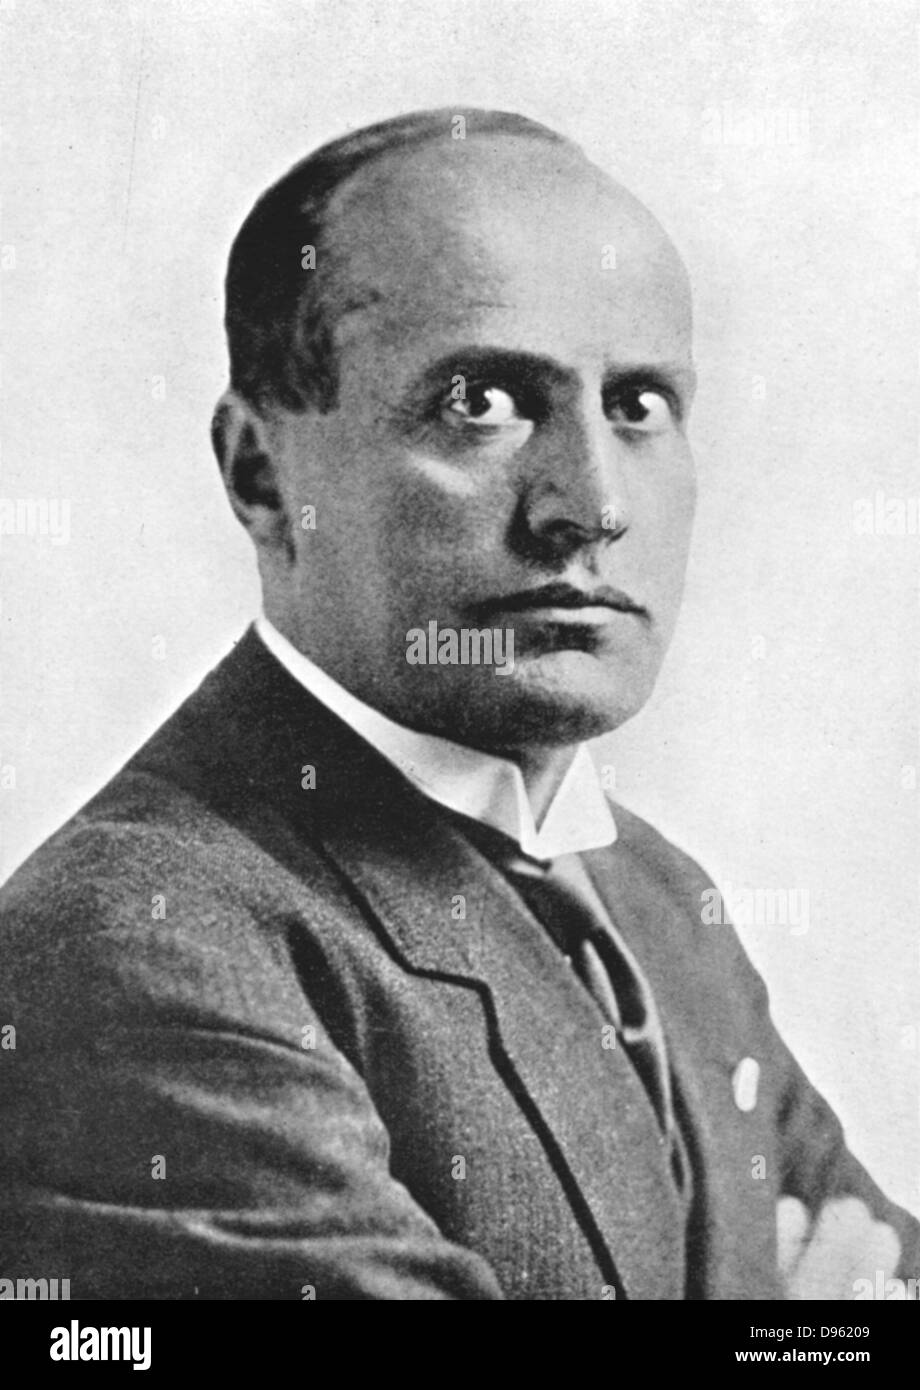 Benito Mussolini (1883-1945) - "Il Duce" - Italien dictateur fasciste. Banque D'Images